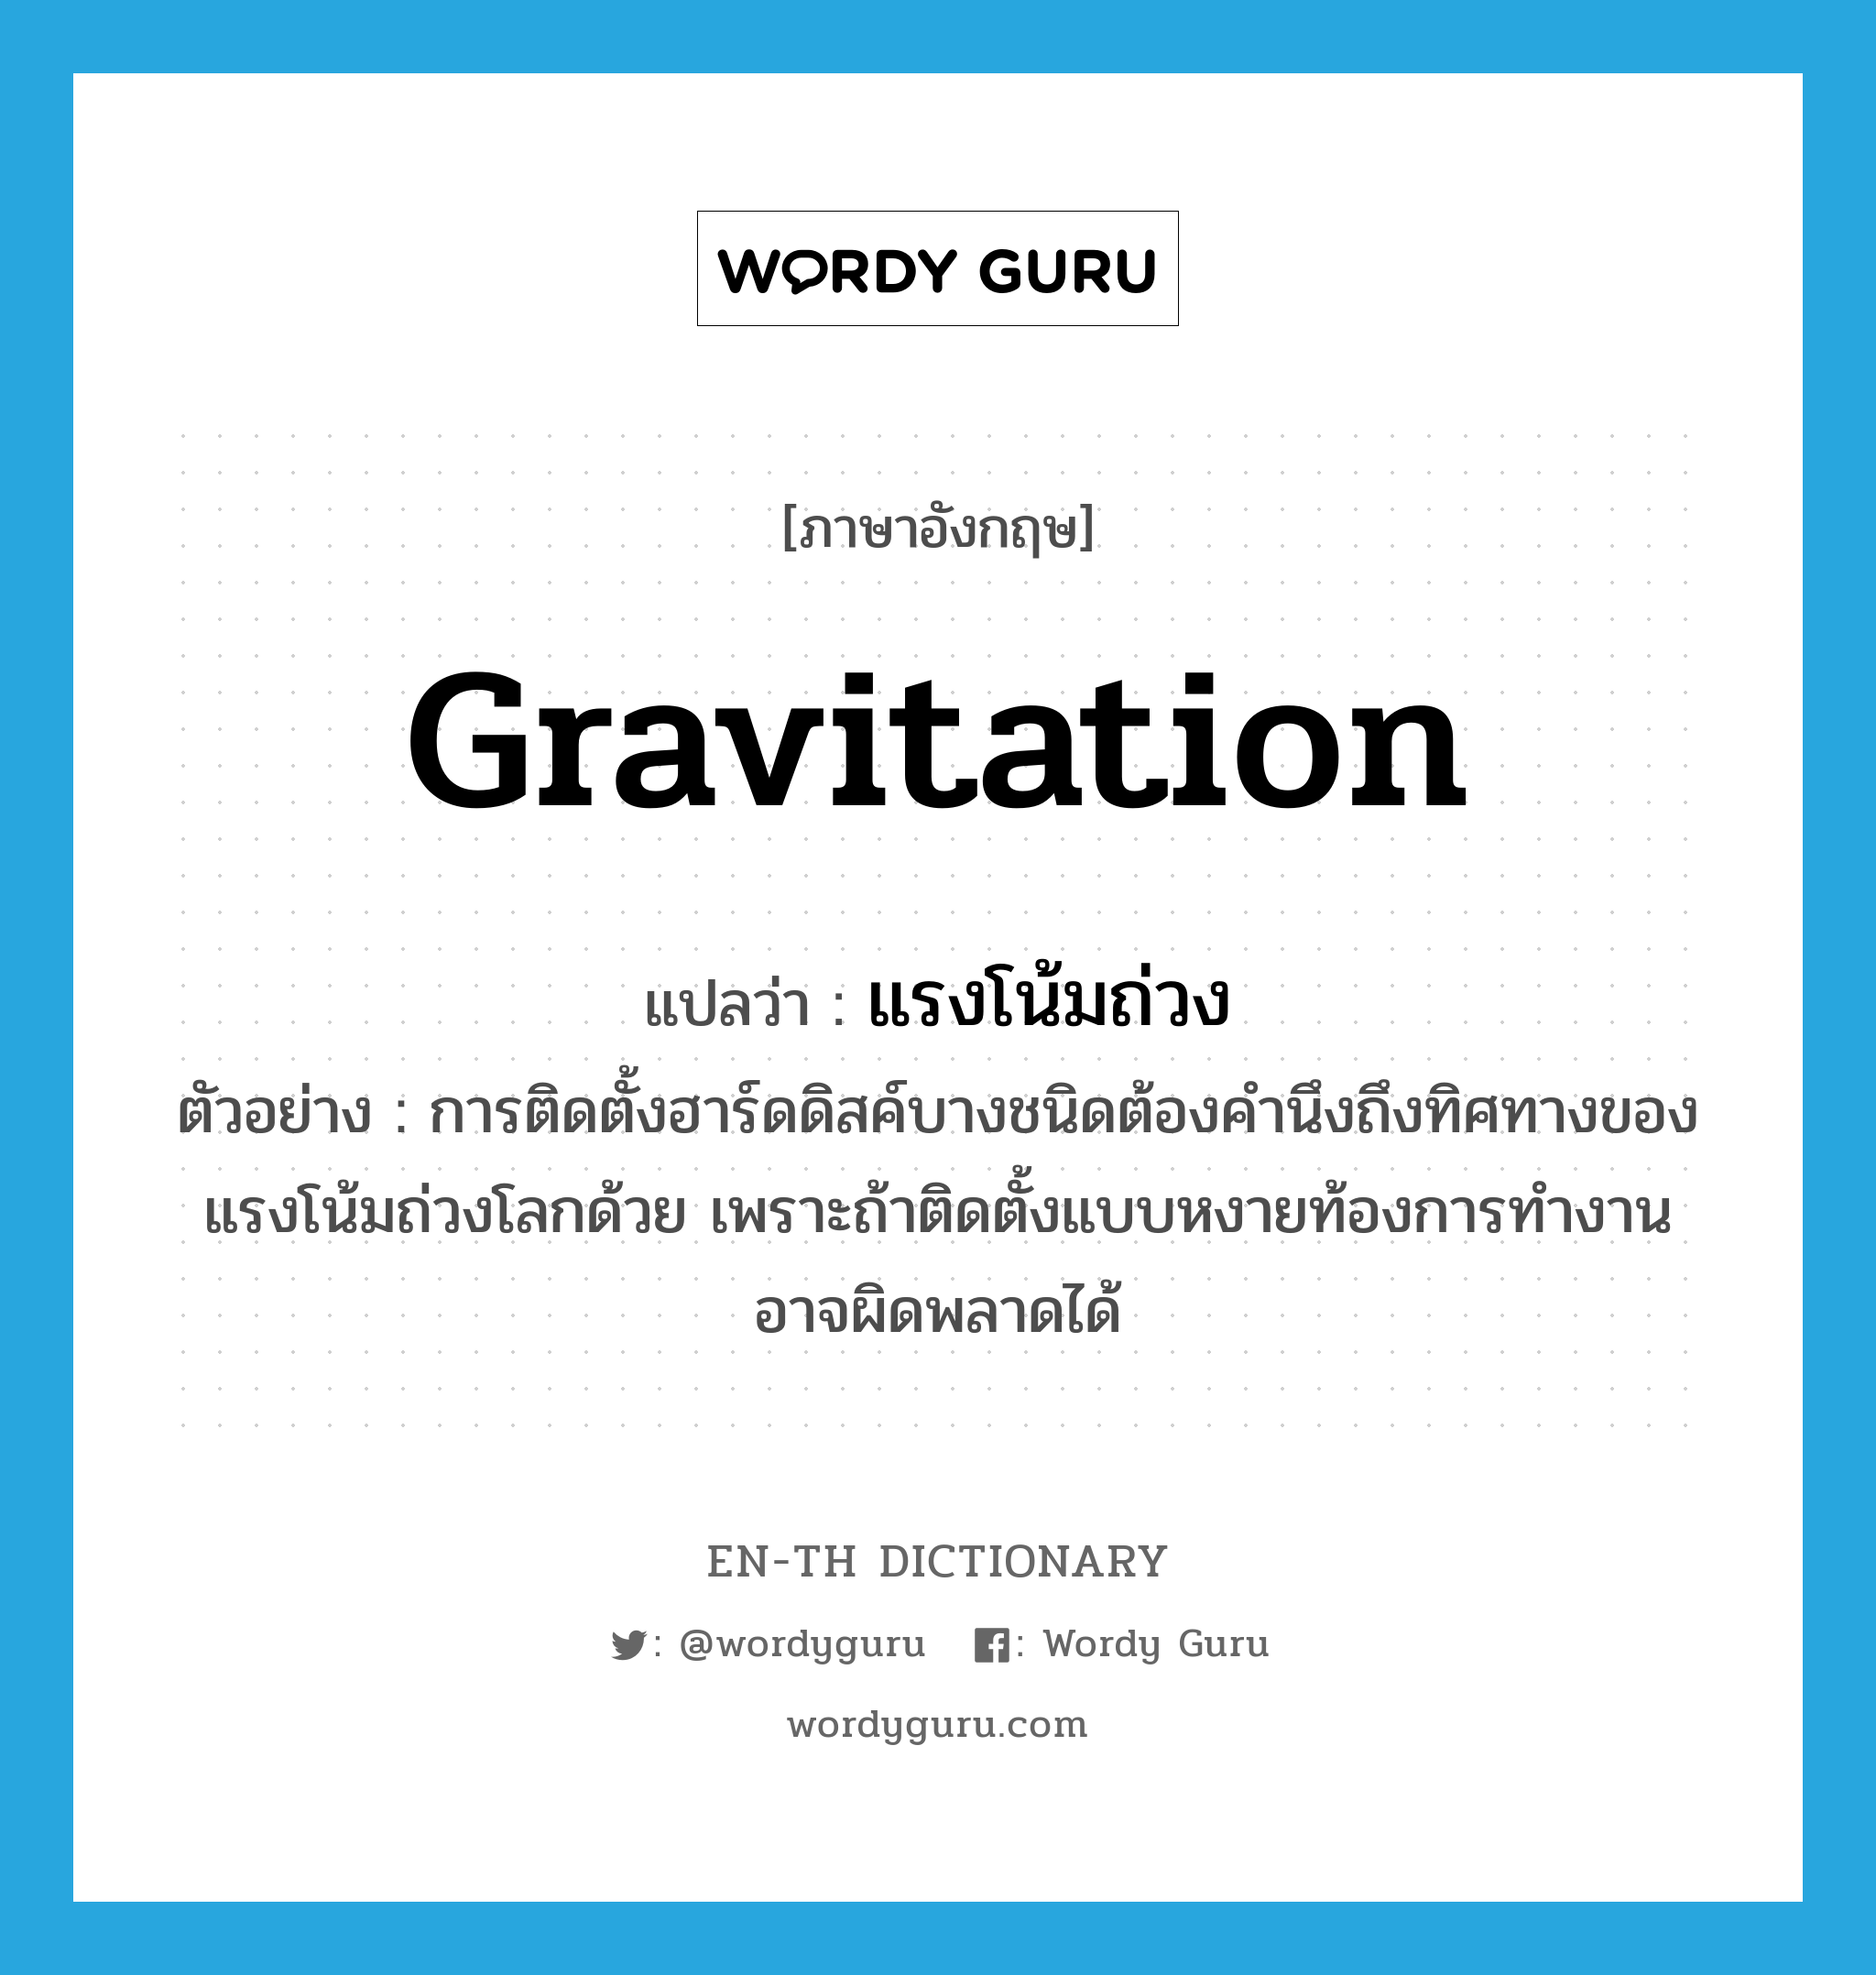 gravitation แปลว่า?, คำศัพท์ภาษาอังกฤษ gravitation แปลว่า แรงโน้มถ่วง ประเภท N ตัวอย่าง การติดตั้งฮาร์ดดิสค์บางชนิดต้องคำนึงถึงทิศทางของแรงโน้มถ่วงโลกด้วย เพราะถ้าติดตั้งแบบหงายท้องการทำงานอาจผิดพลาดได้ หมวด N